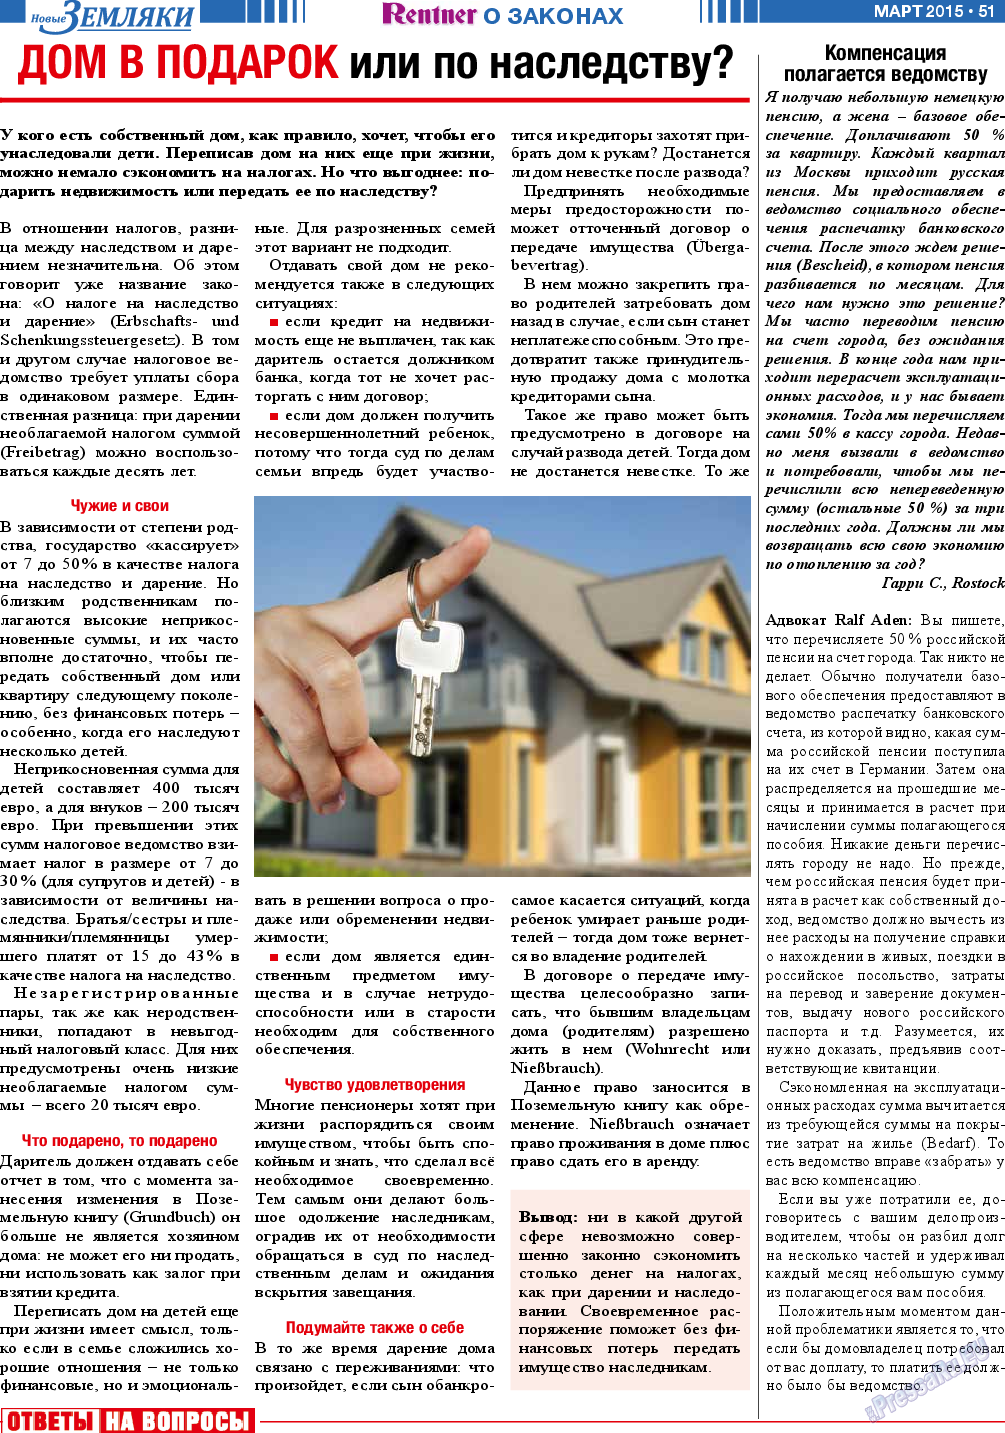 Новые Земляки, газета. 2015 №3 стр.51